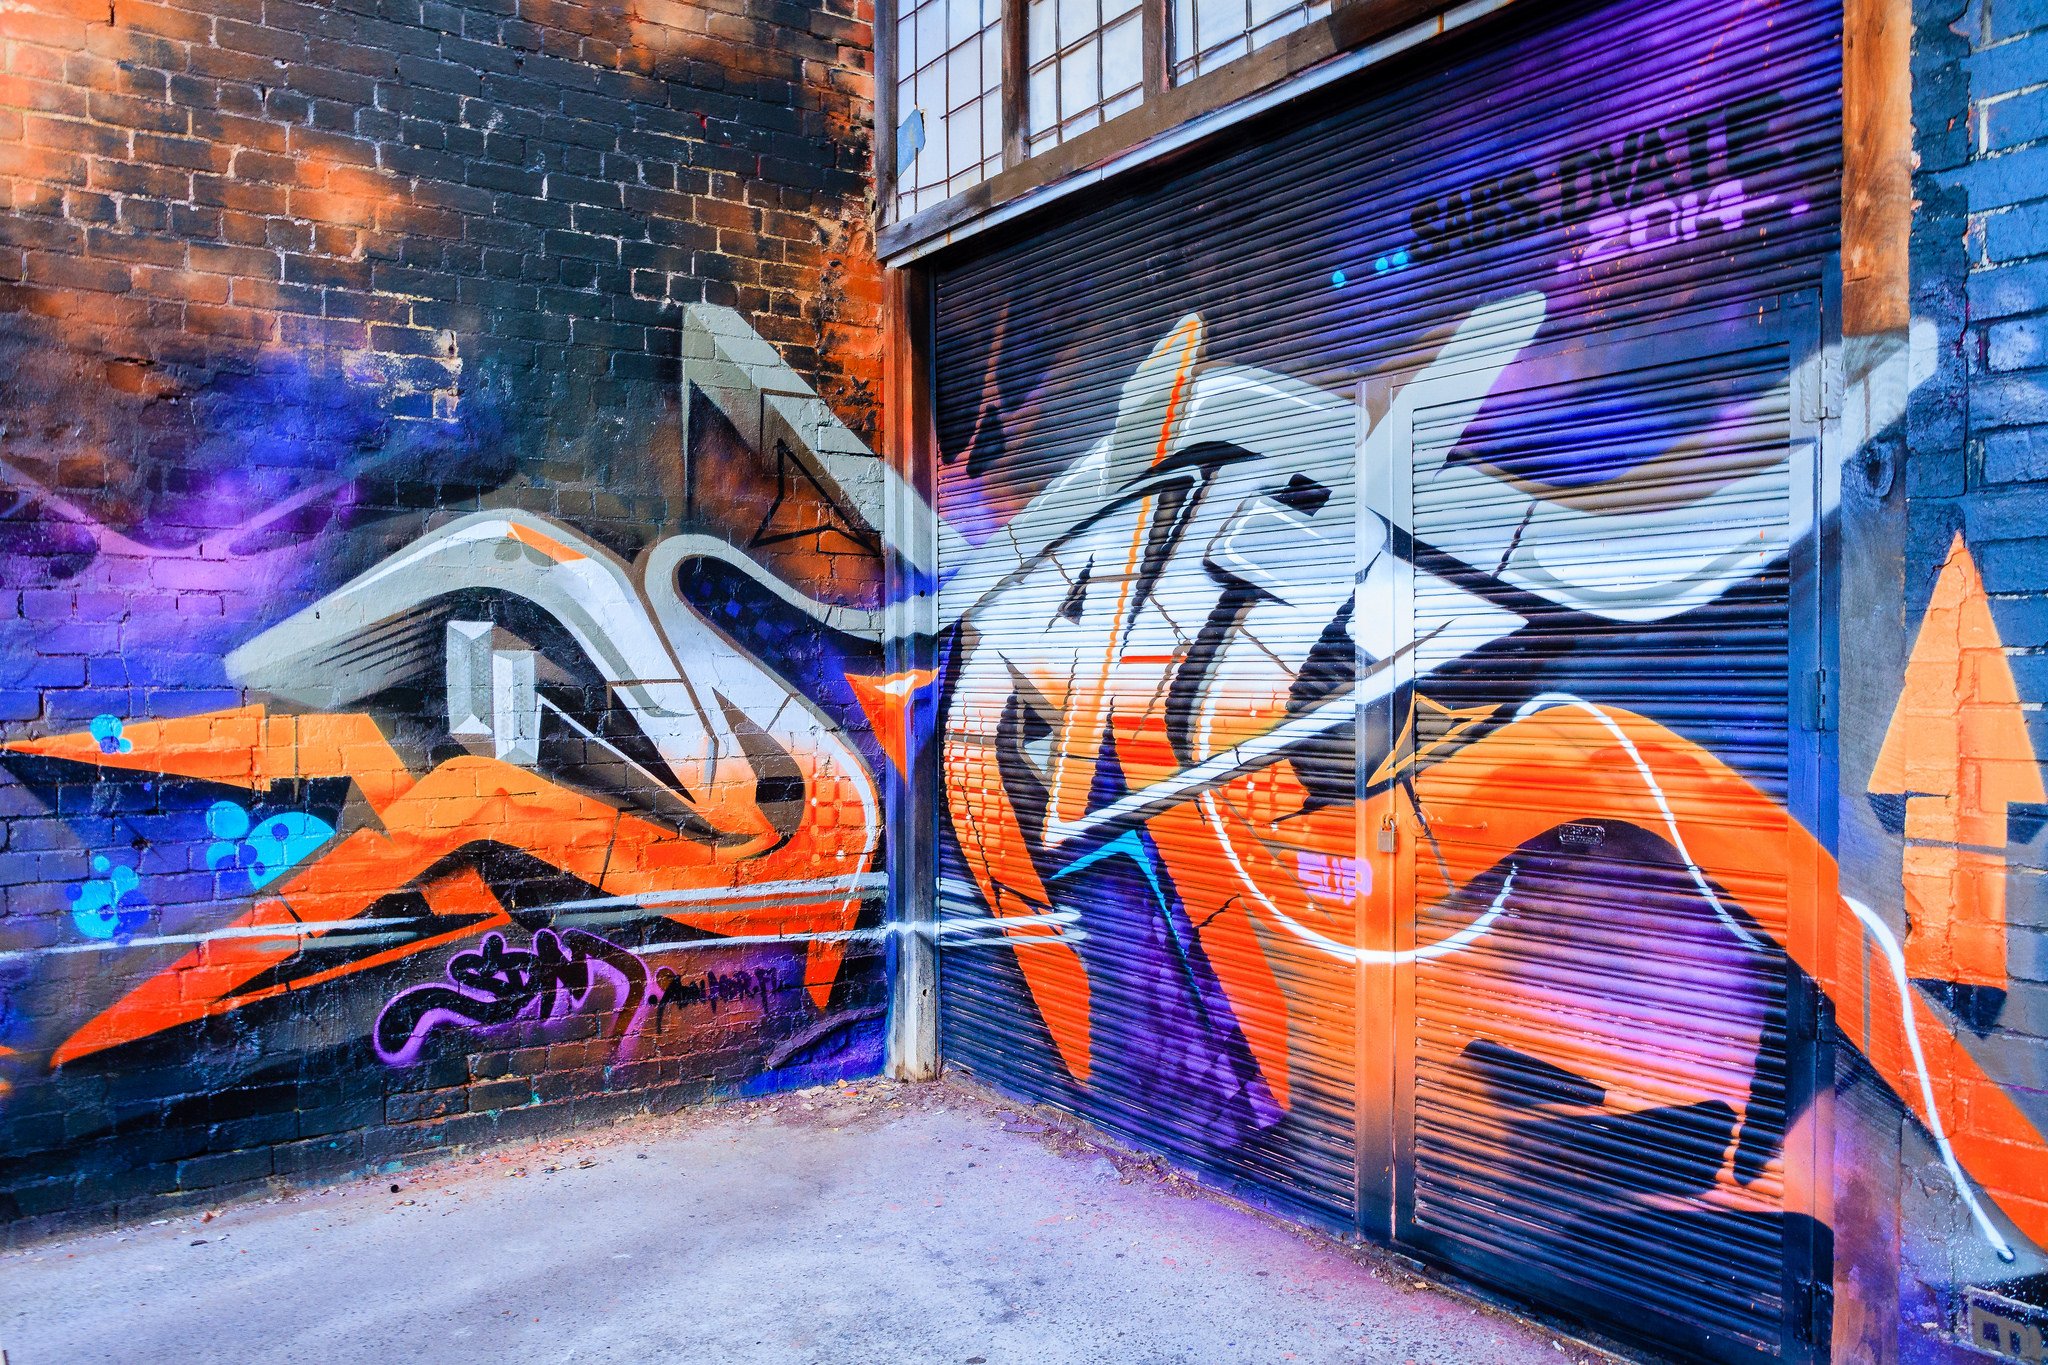 art, Buildings, Cities, City, Colors, Graff, Graffiti, Illegal, Street